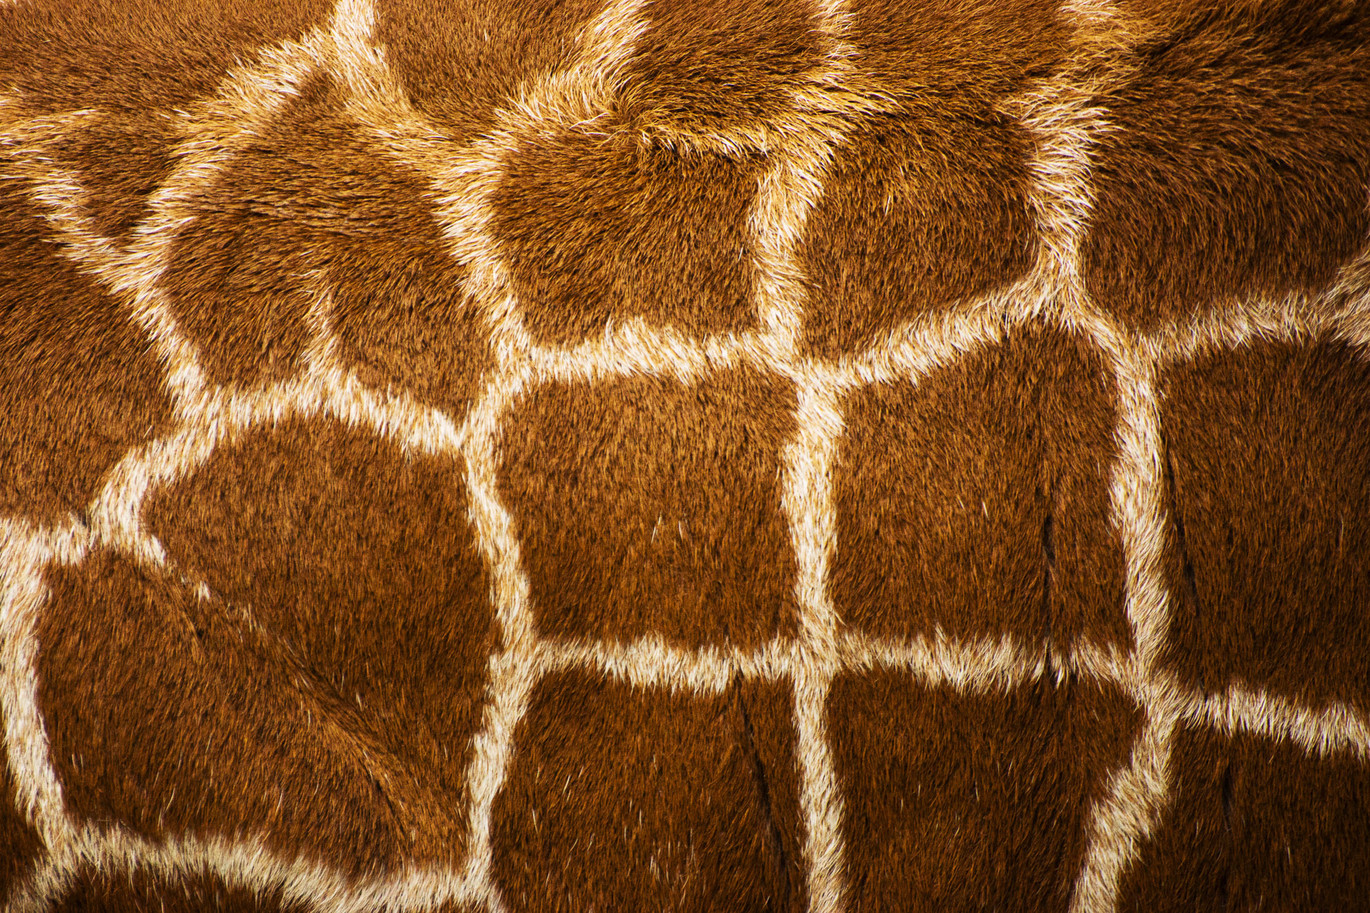 Voronoï patroon bij giraffen